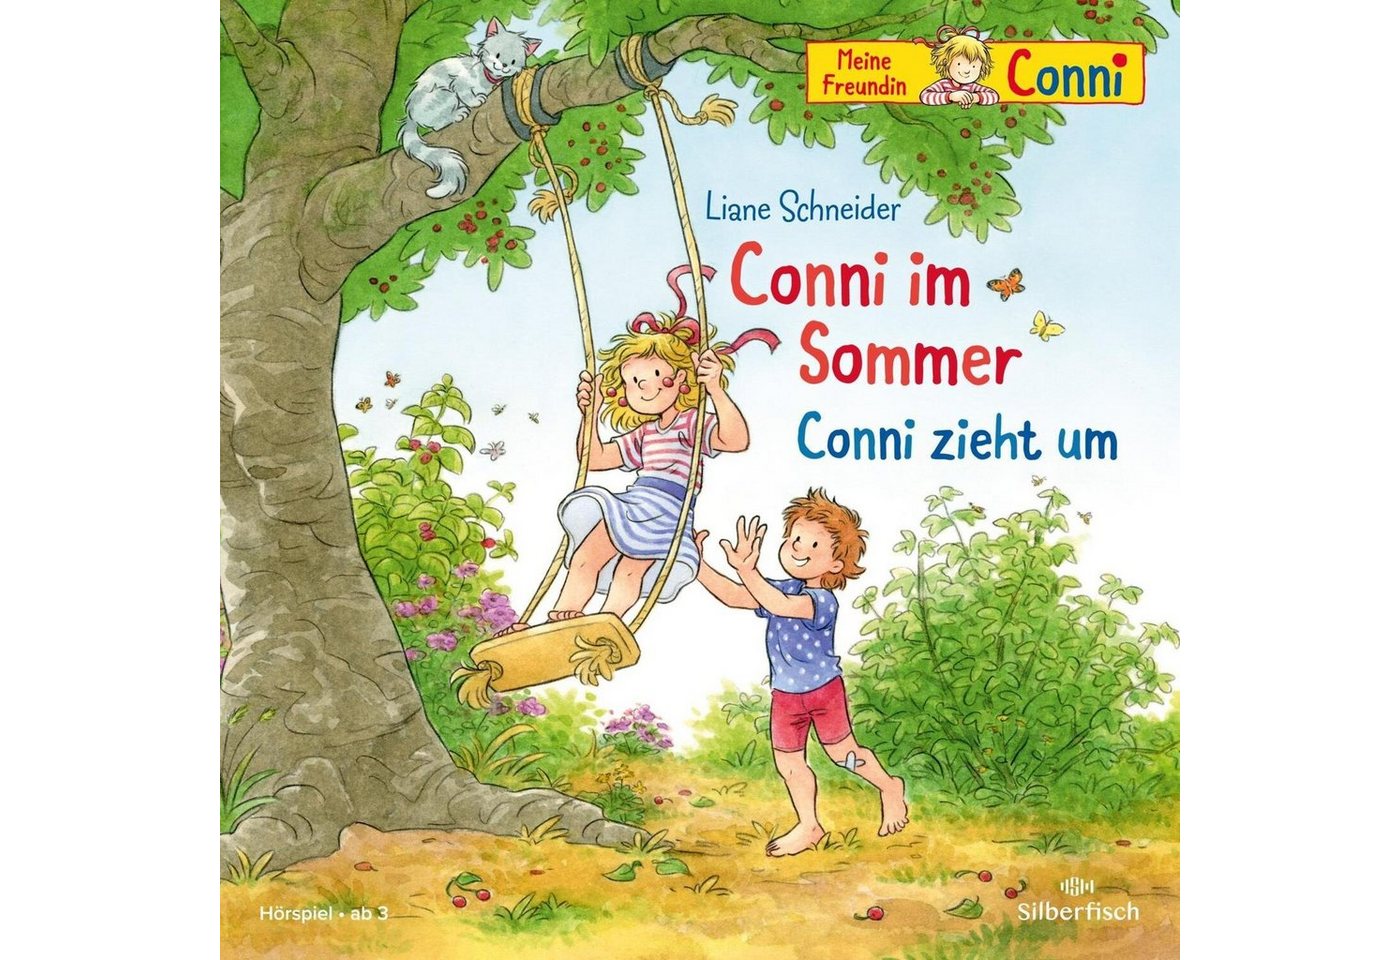 Silberfisch Verlag Hörspiel Conni im Sommer / Conni zieht um (Meine Freundin Conni - ab 3) von Silberfisch Verlag